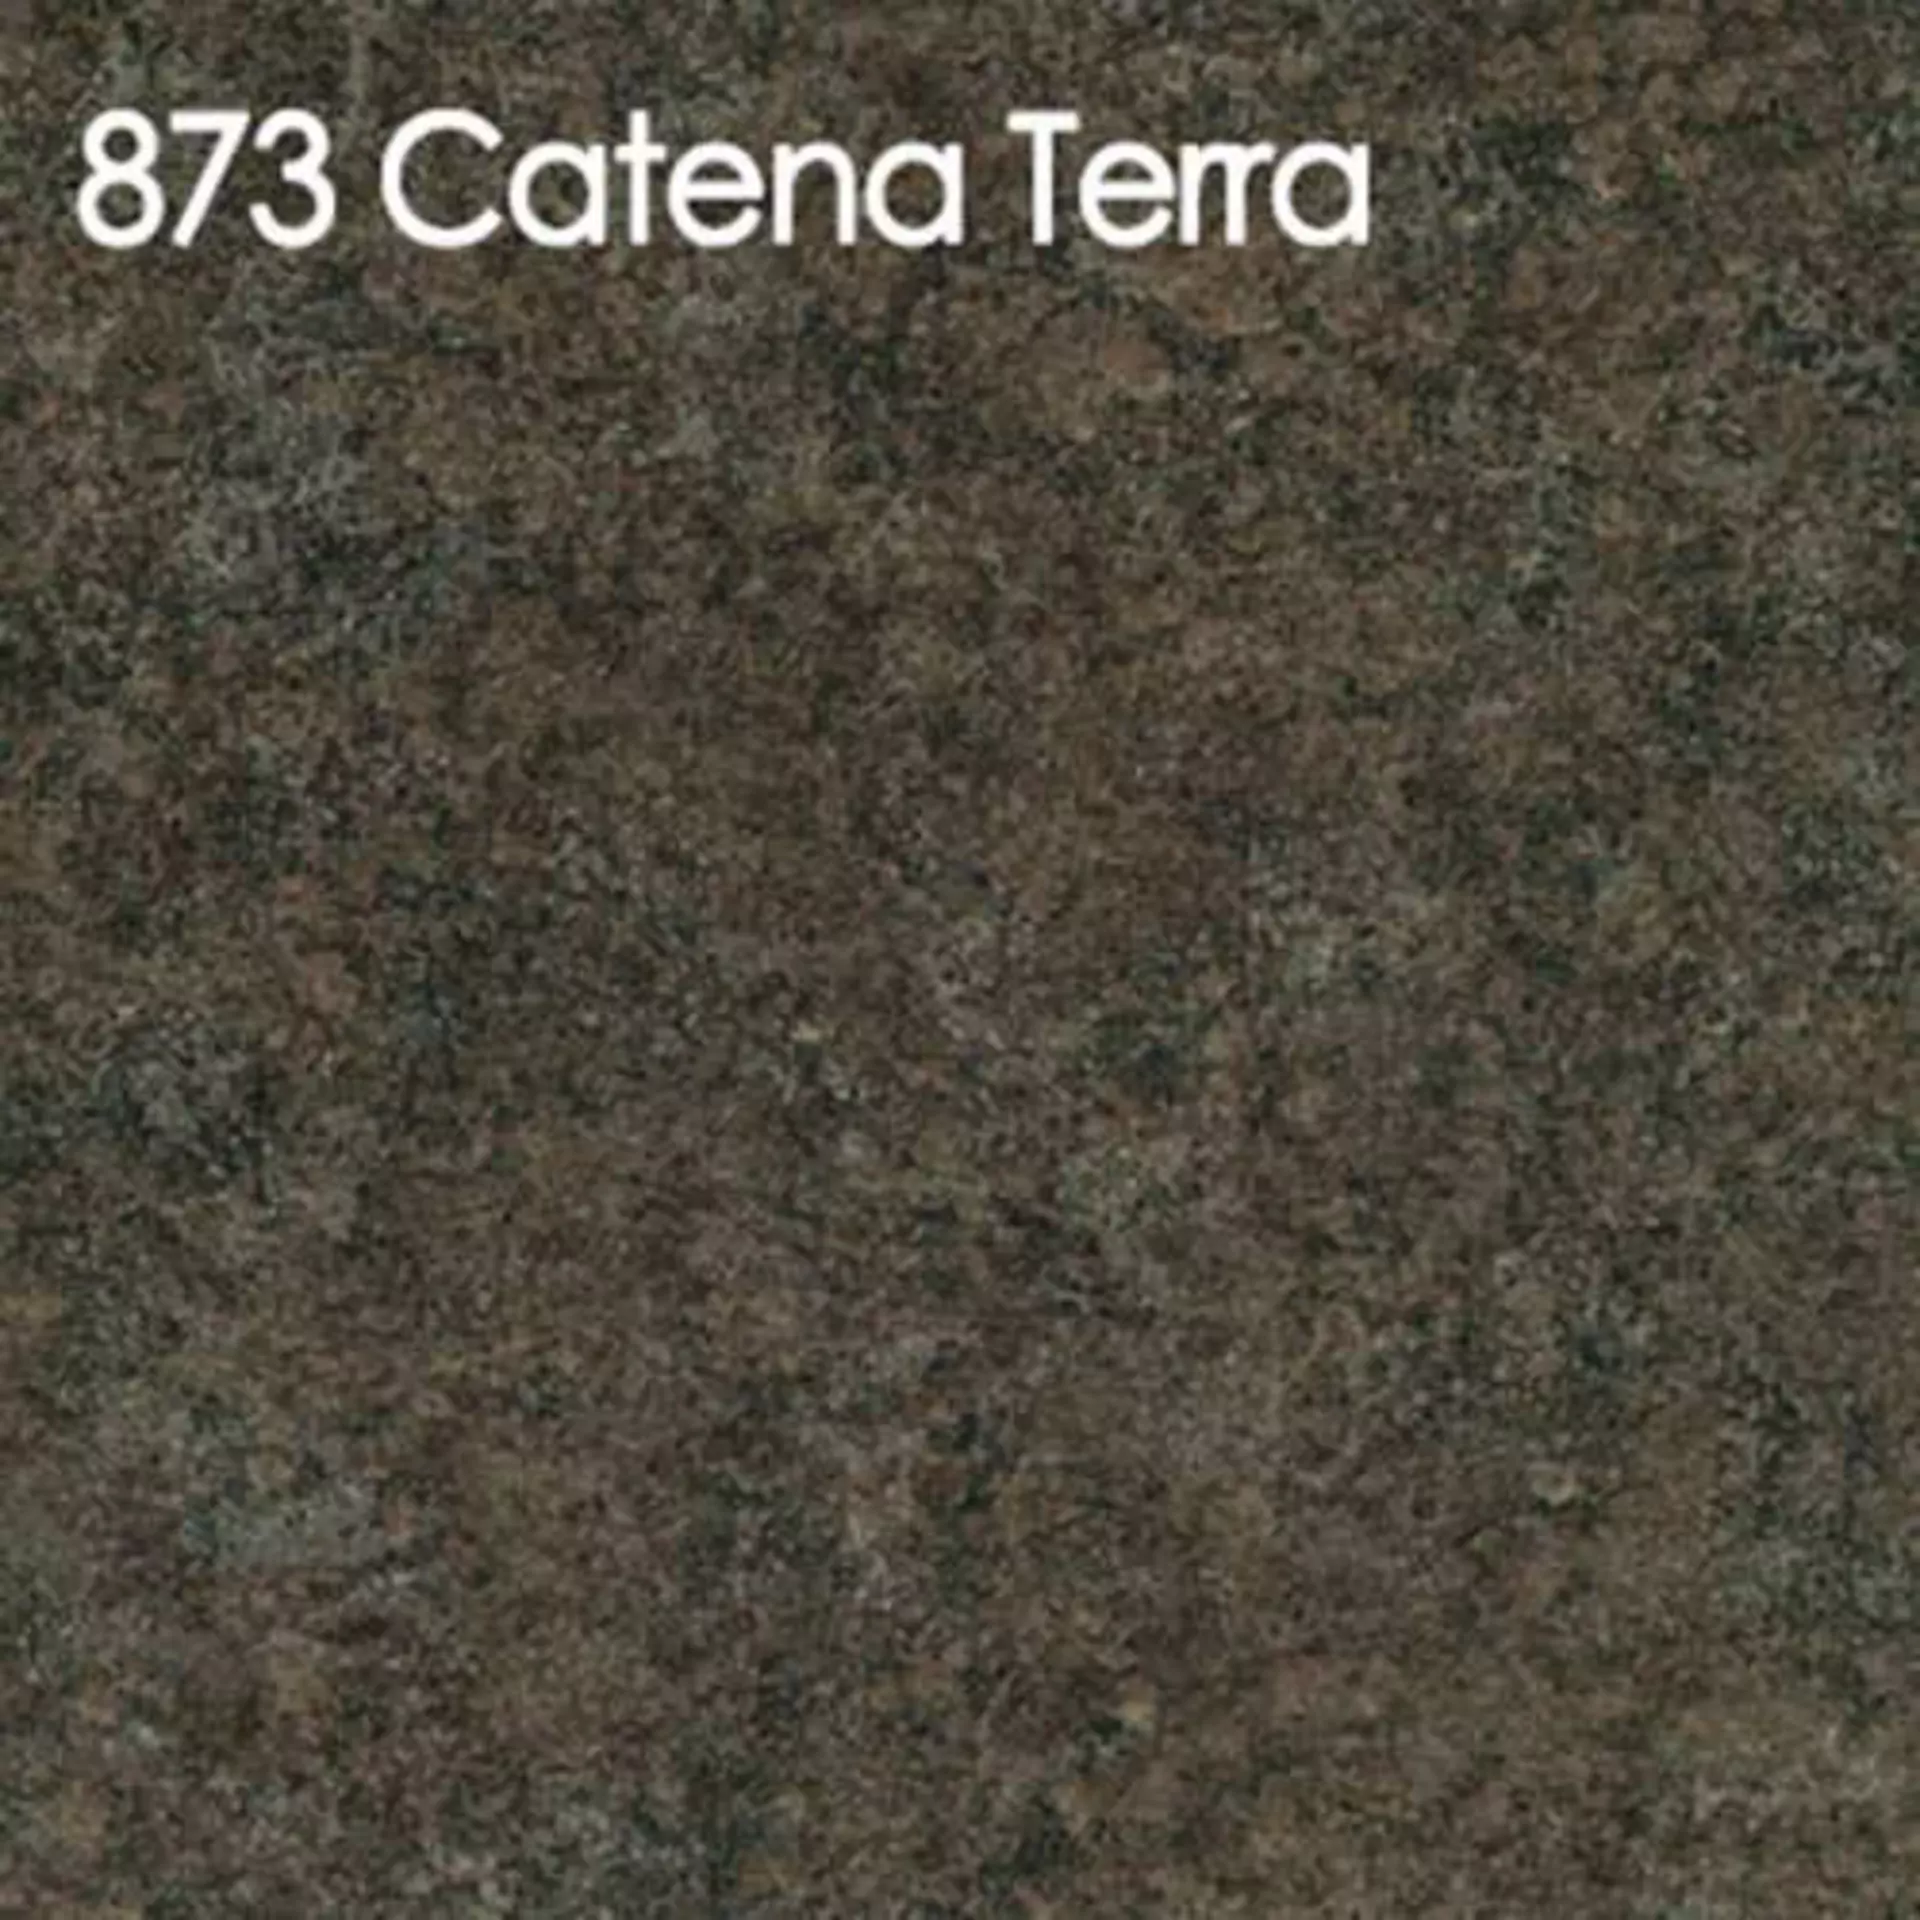 Arbeitsplatte aus Laminat in der bräunlich grauen Ausführung Catena Terra.